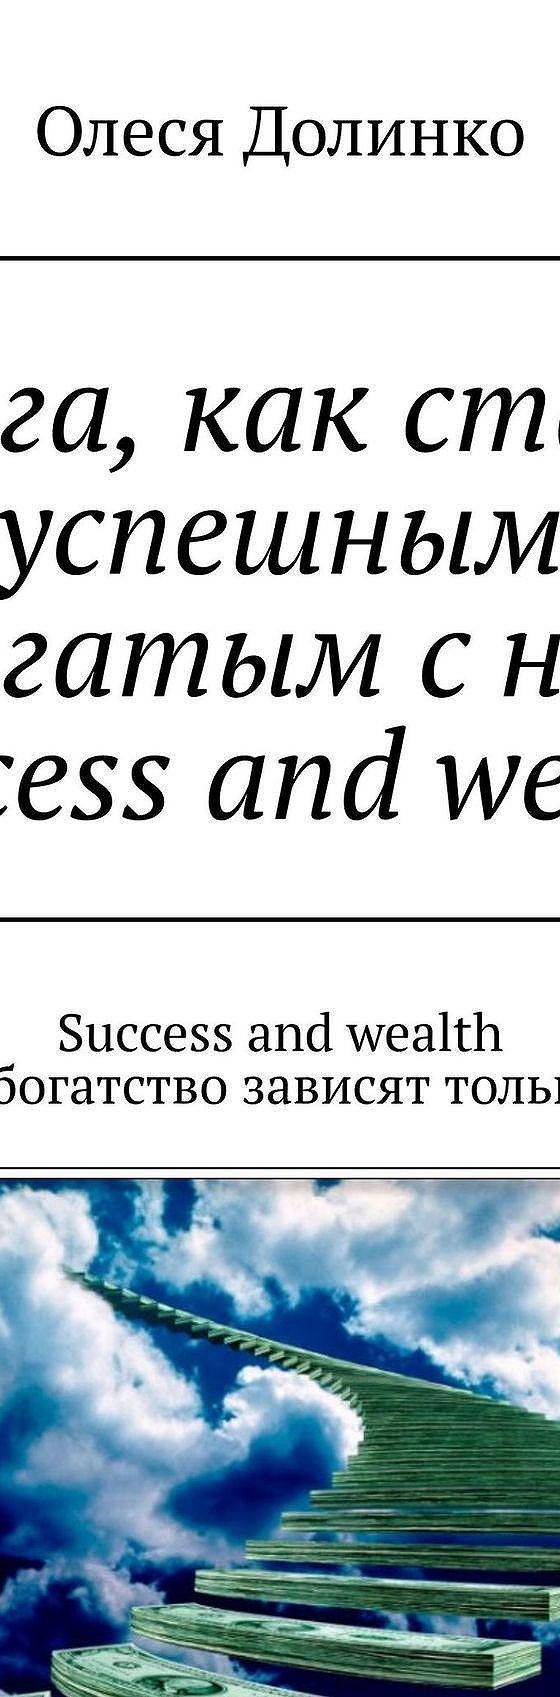 Читать книгу «Книга, как стать успешным и богатым с нуля. Success and  wealth. Success and wealth Успех и богатство зависят только от вас» онлайн  полностью📖 — Олеси Долинко — MyBook.